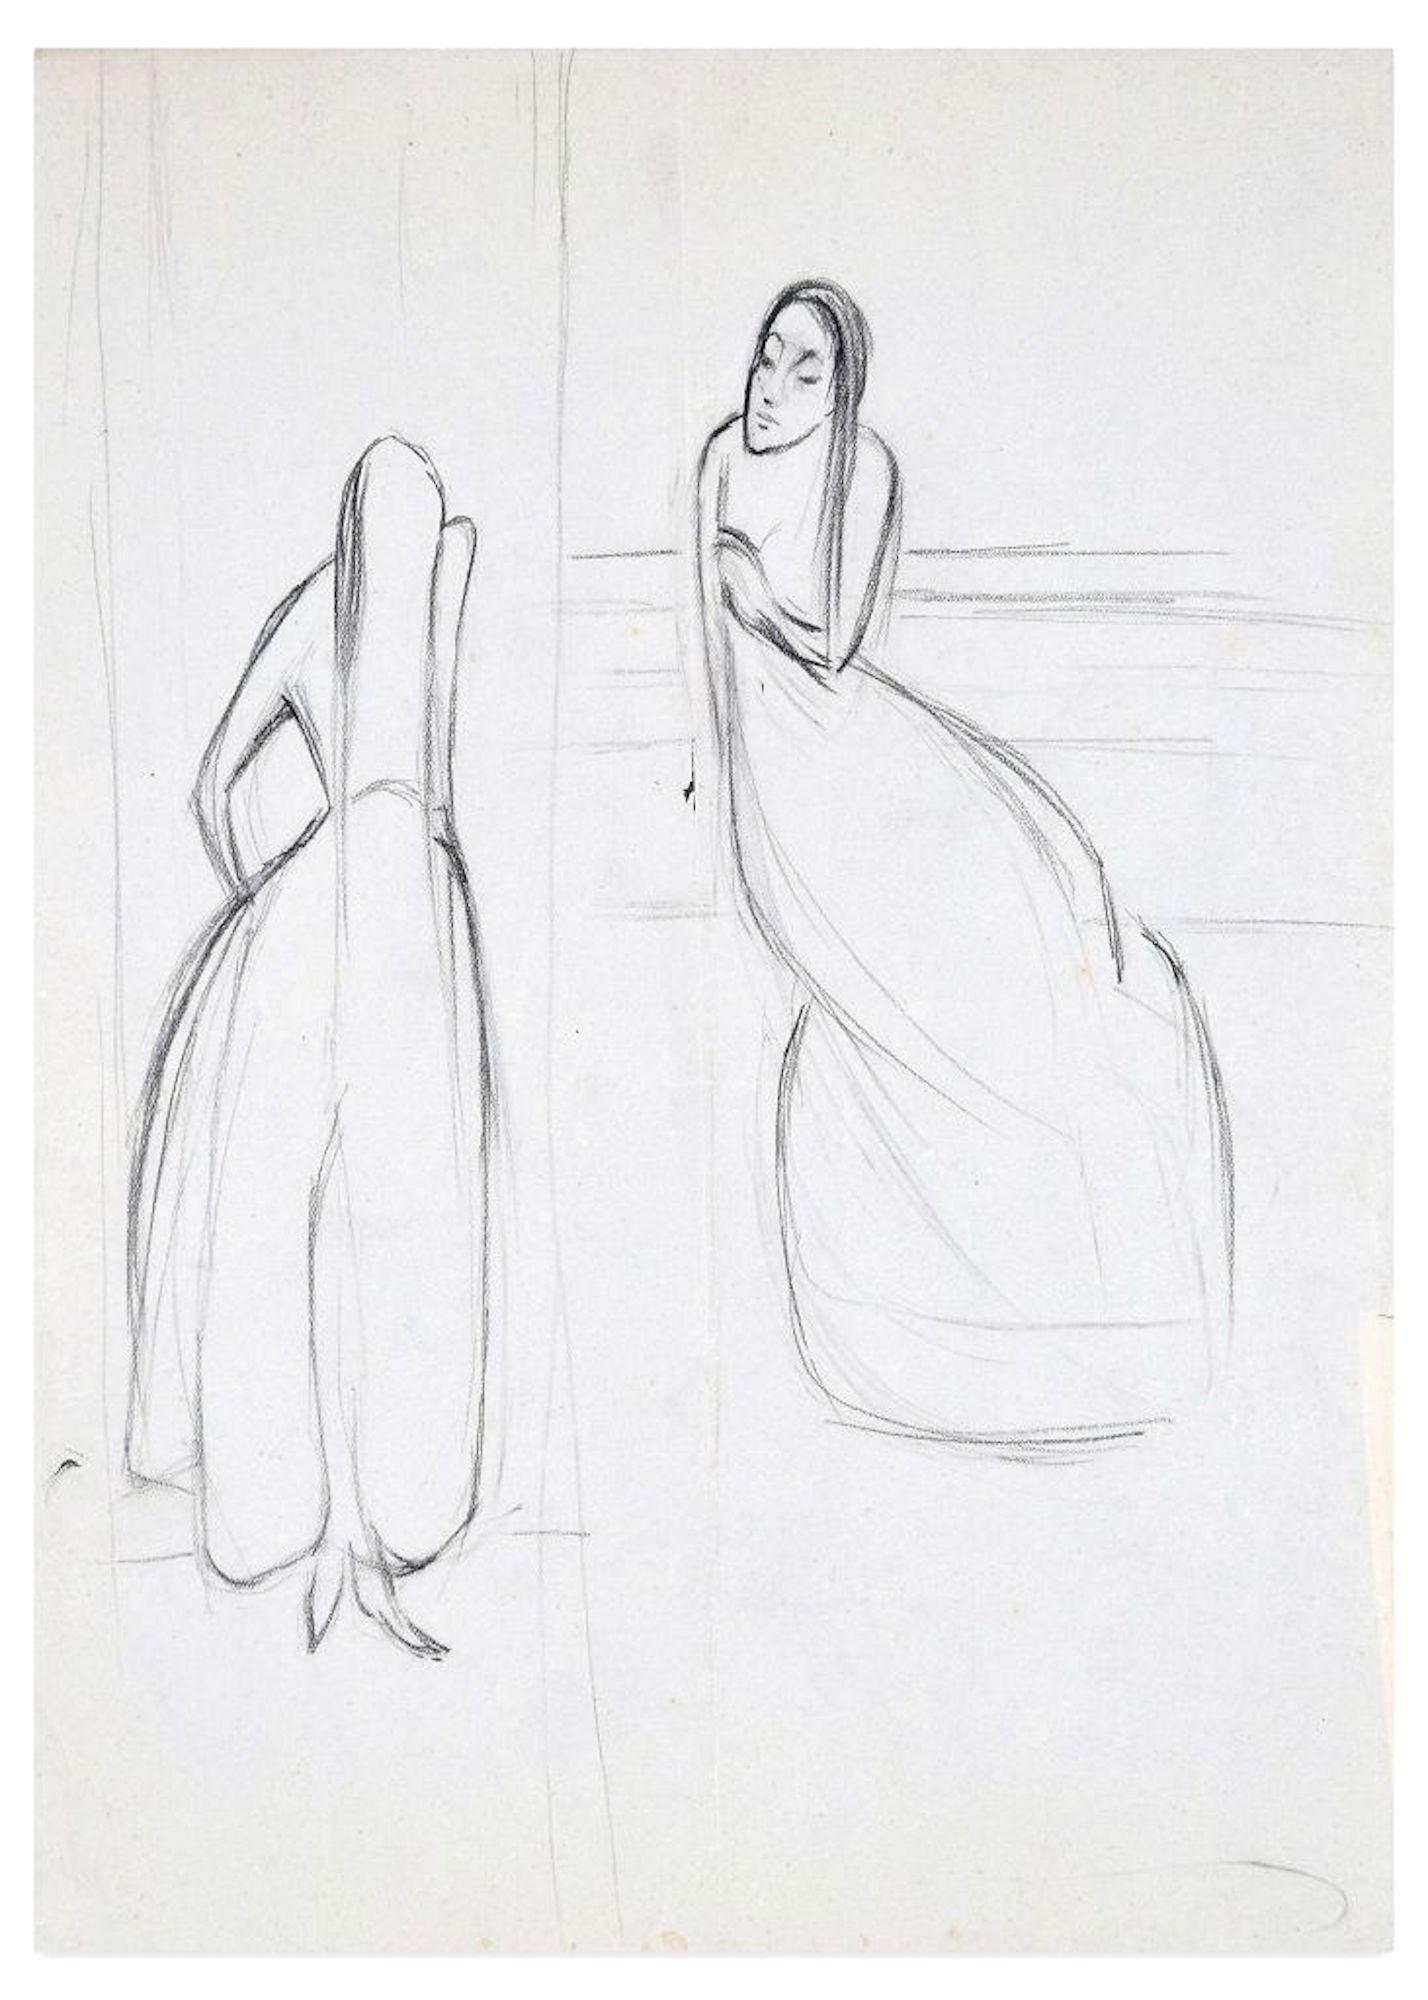 Deux femmes est un dessin original sur papier ivoire réalisé par Flor David dans les années 1950.

Il s'agit d'un dessin original au fusain sur bloc notes et il représente deux femmes aux cheveux longs qui se parlent. Au dos, un petit croquis